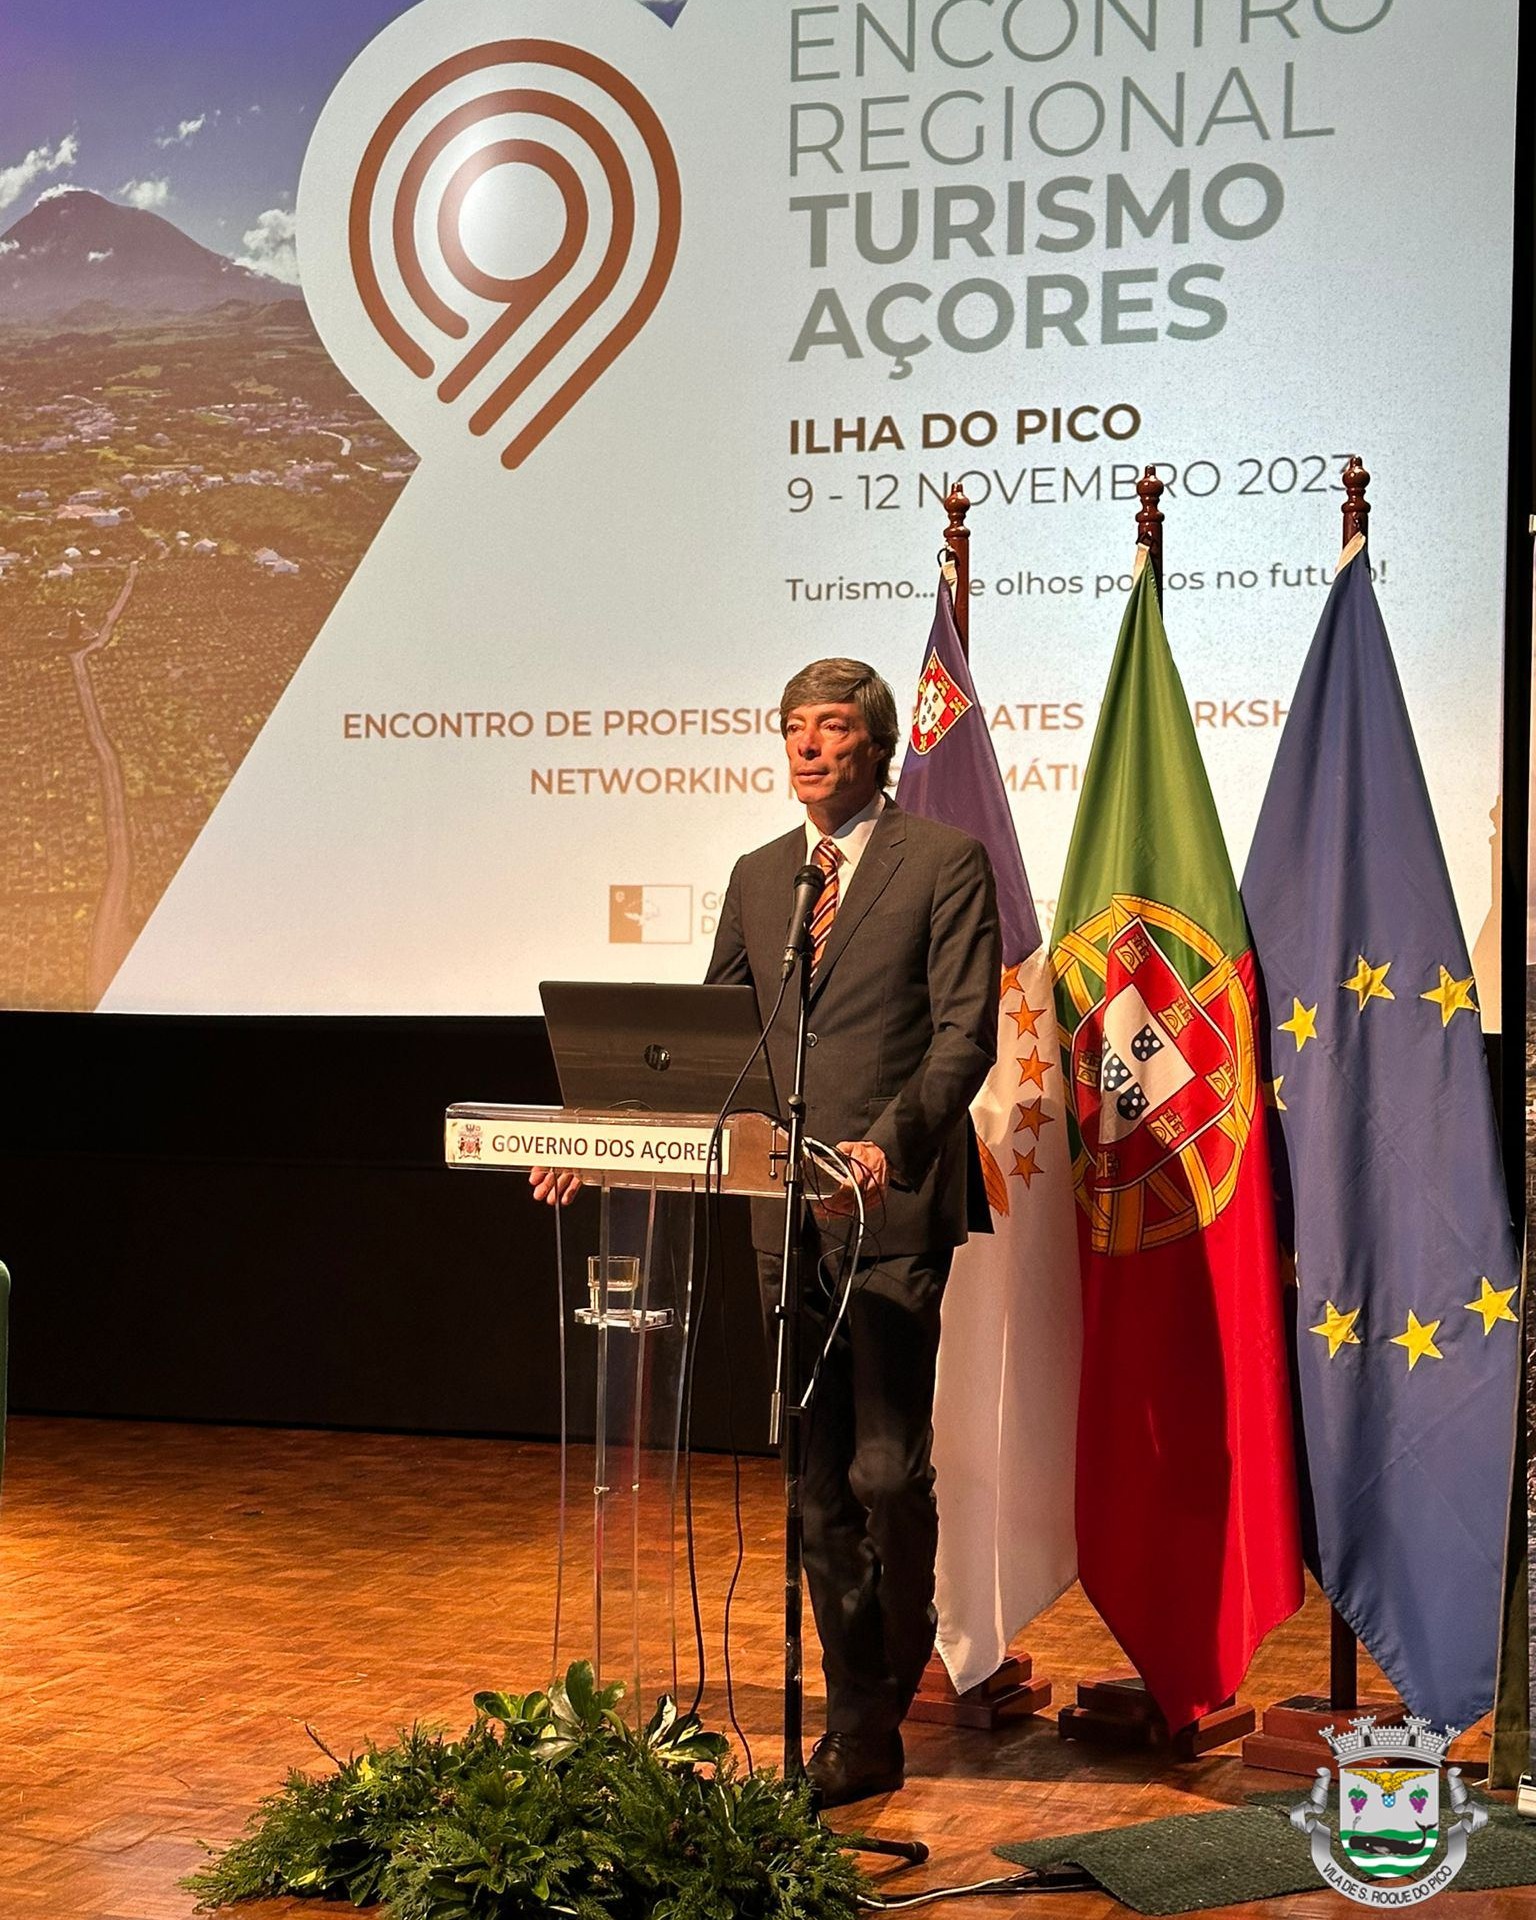 Câmara Municipal de São Roque marca presença no Encontro Regional de Turismo